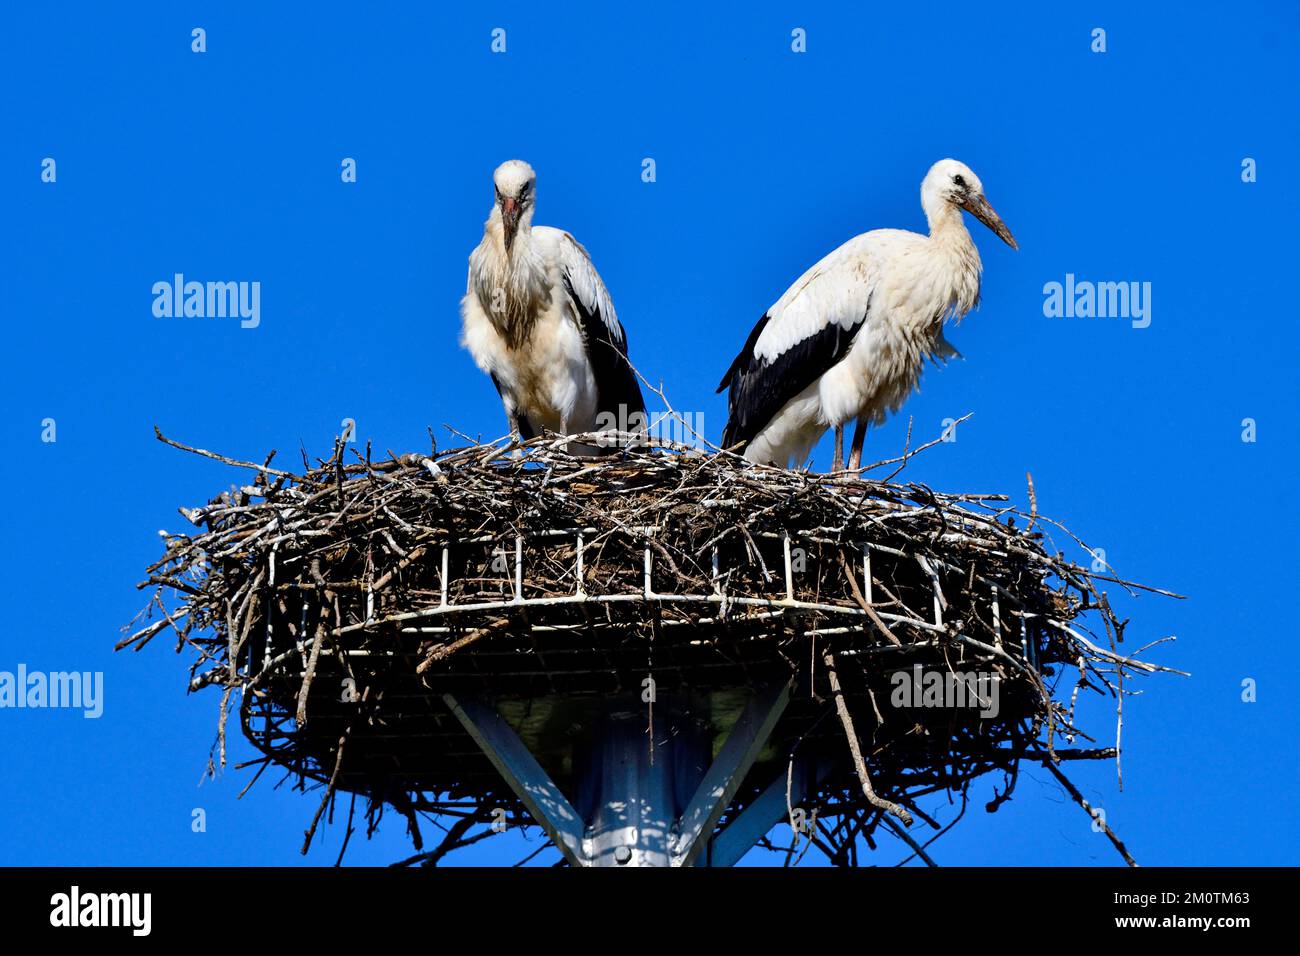 Francia, Doubs, Allenjoie, fauna, aves, Cigüeña Blanca (Ciconia ciconia), plataforma de caja nido, pareja Foto de stock